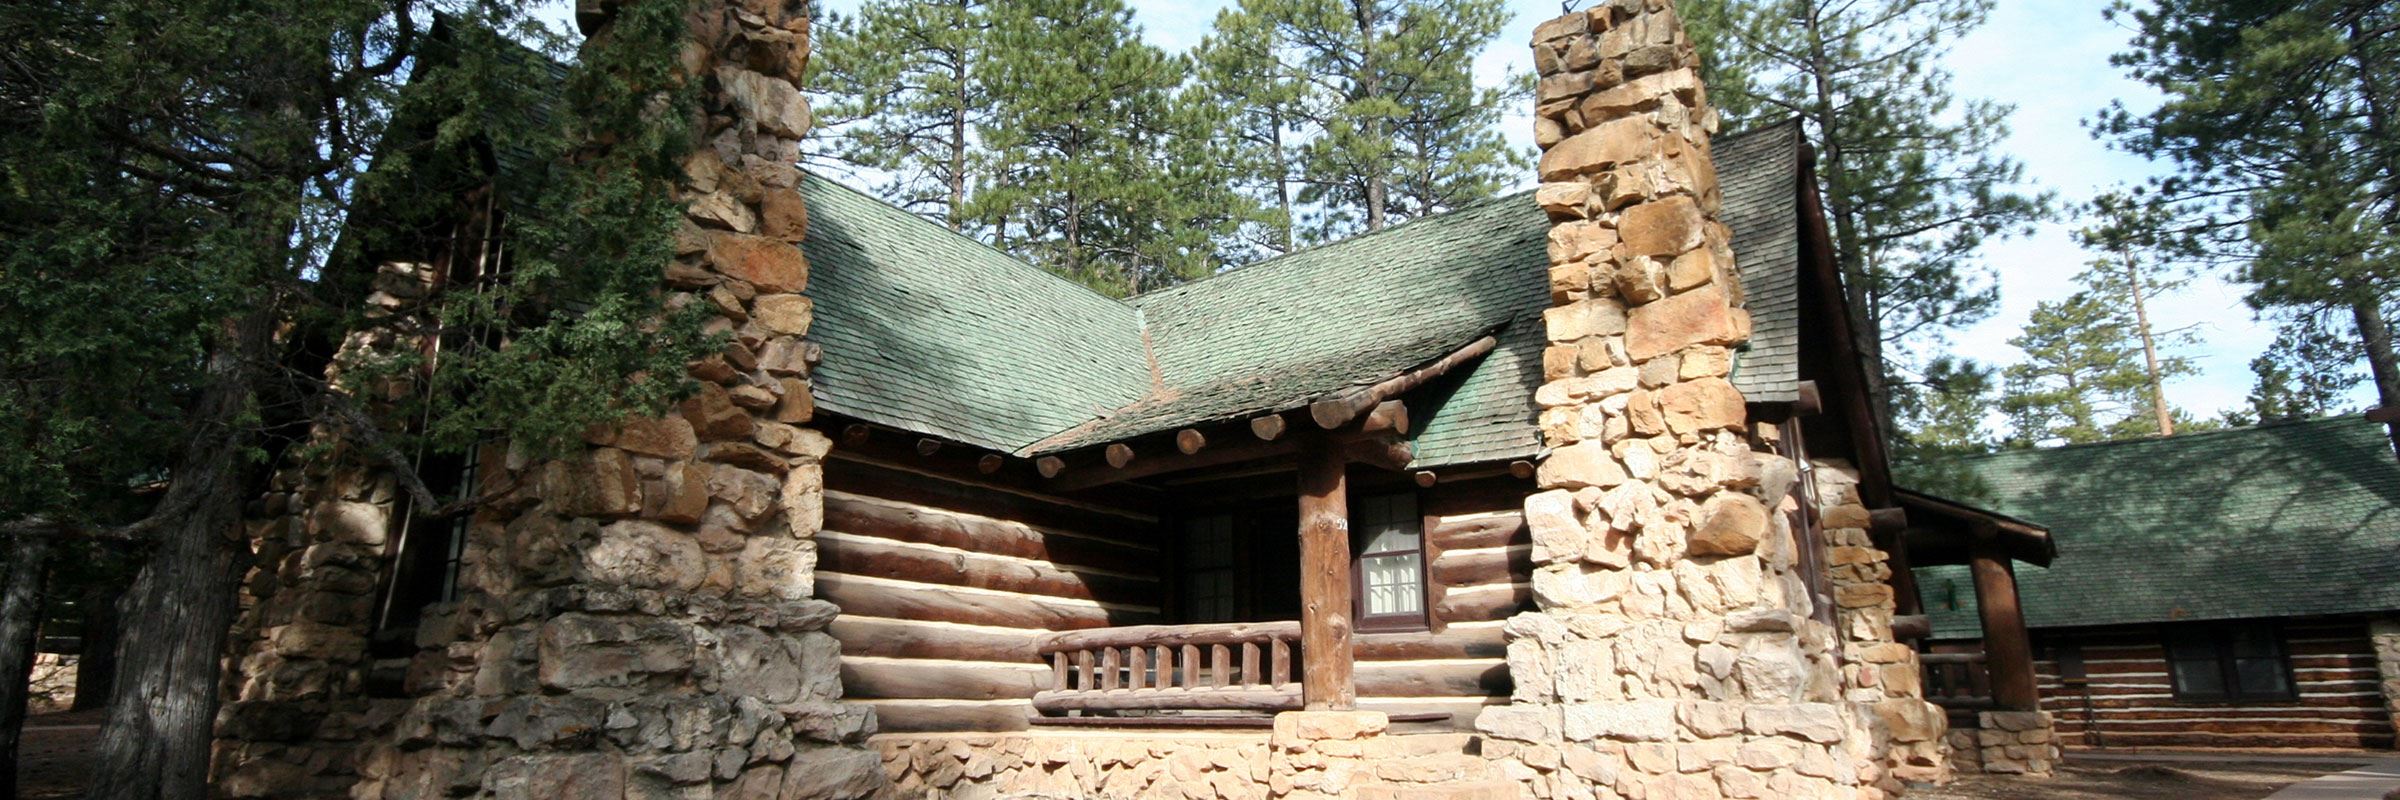 lodge at bryce canyon